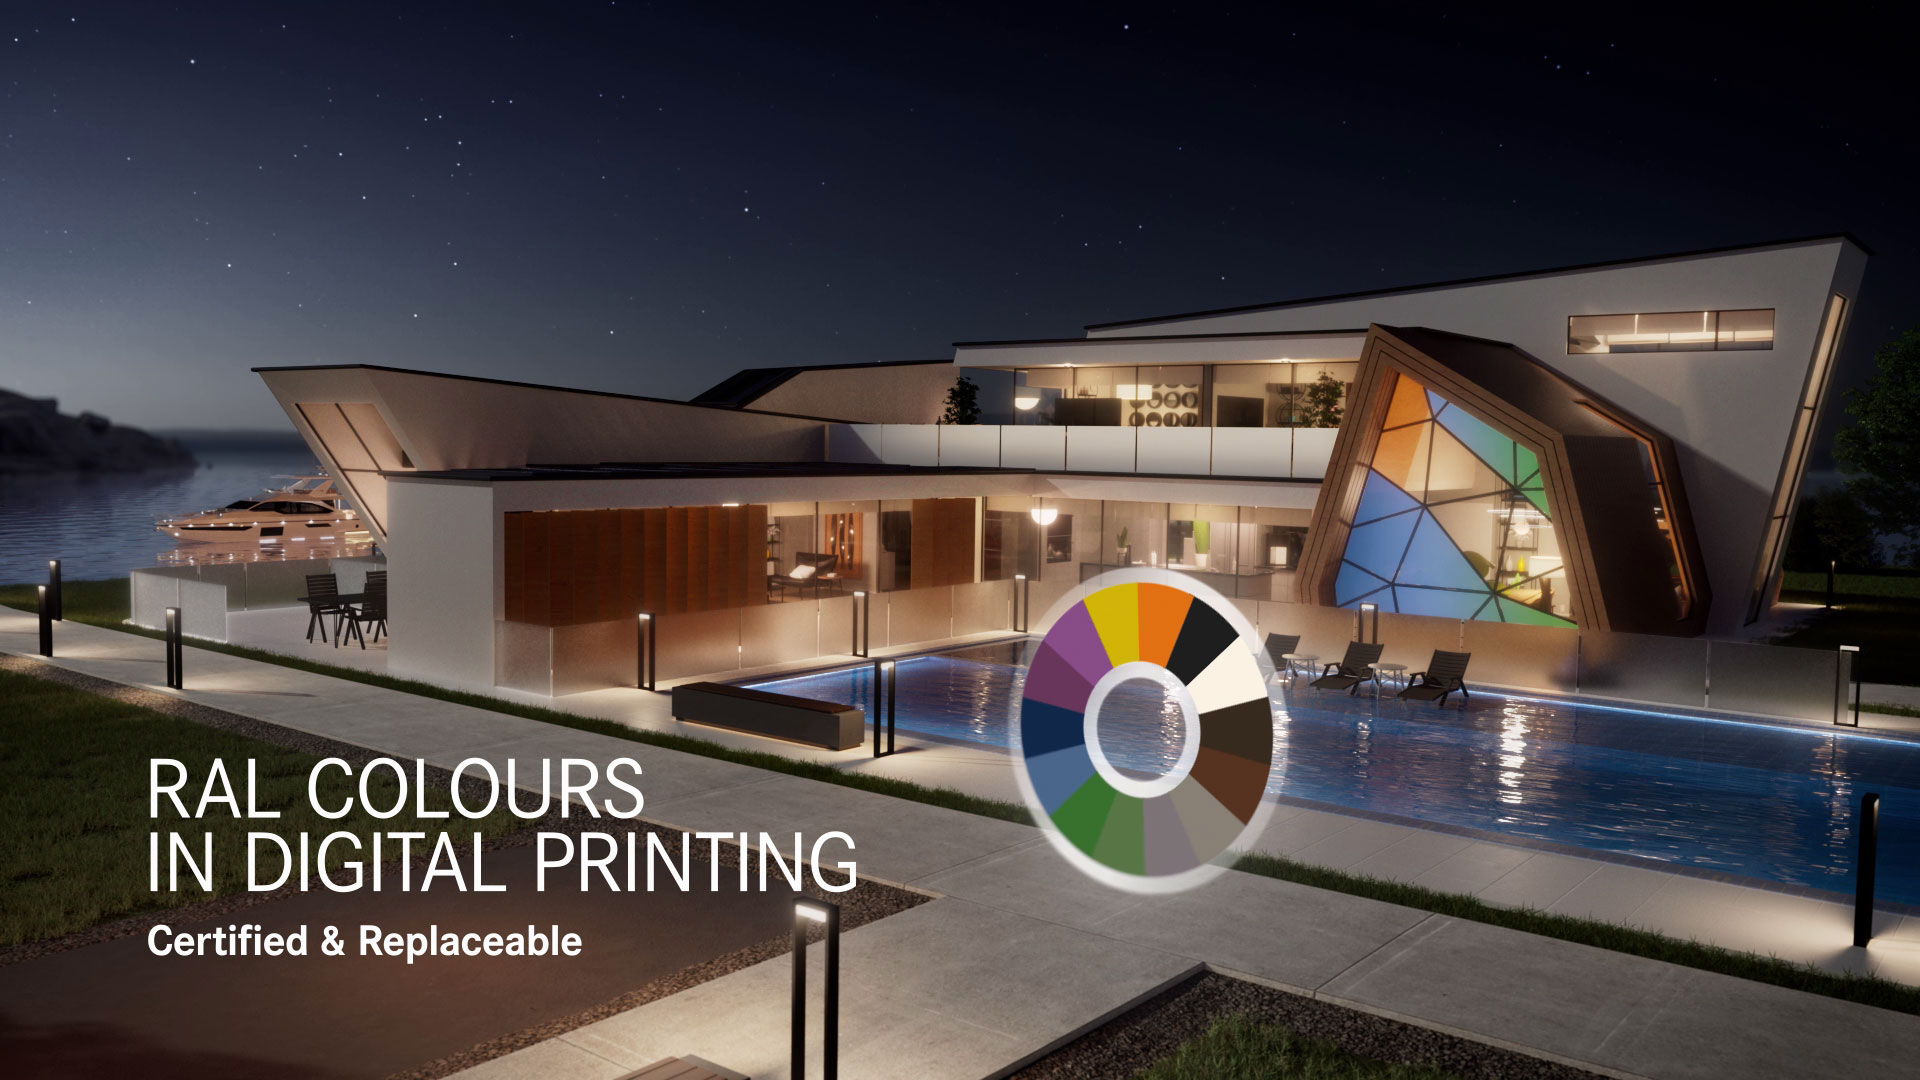 Ein luxuriöses Haus, das mit den Worten "RAL-Farben im Digitaldruck" geschmückt ist.